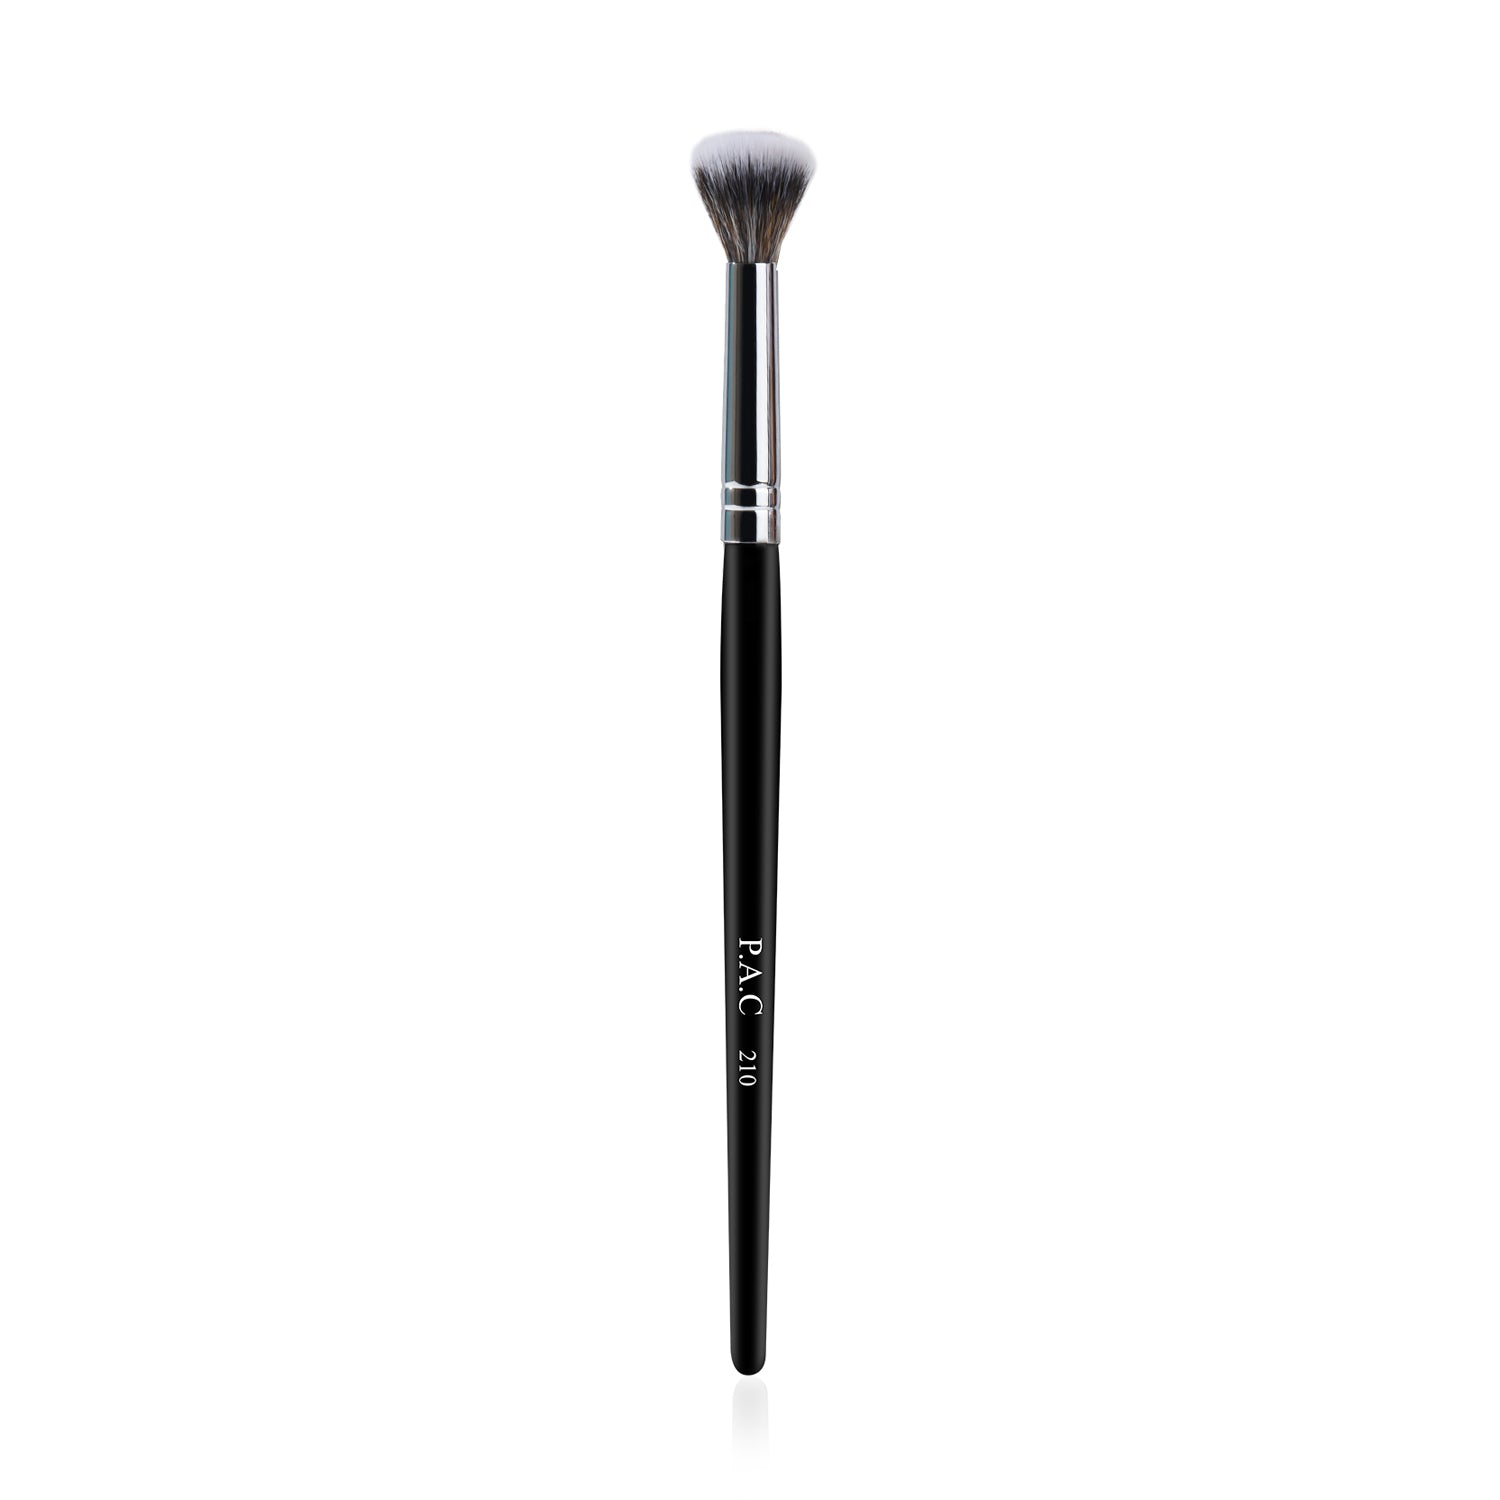 PAC Cosmetics Eyeshadow Blending Brush 210